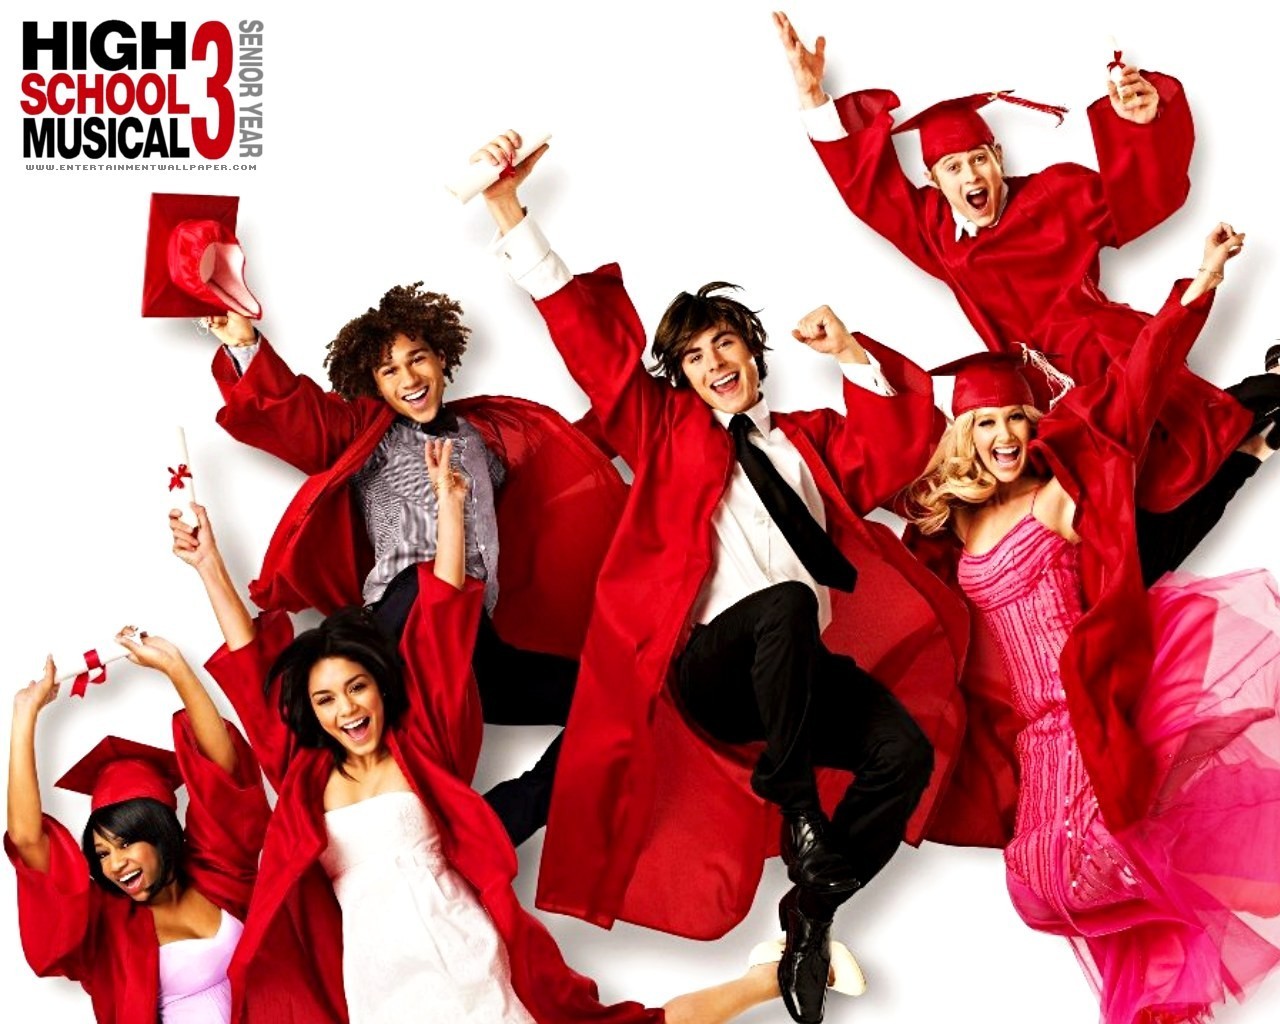 High School Musical - High School Musical 3 Wallpaper ...